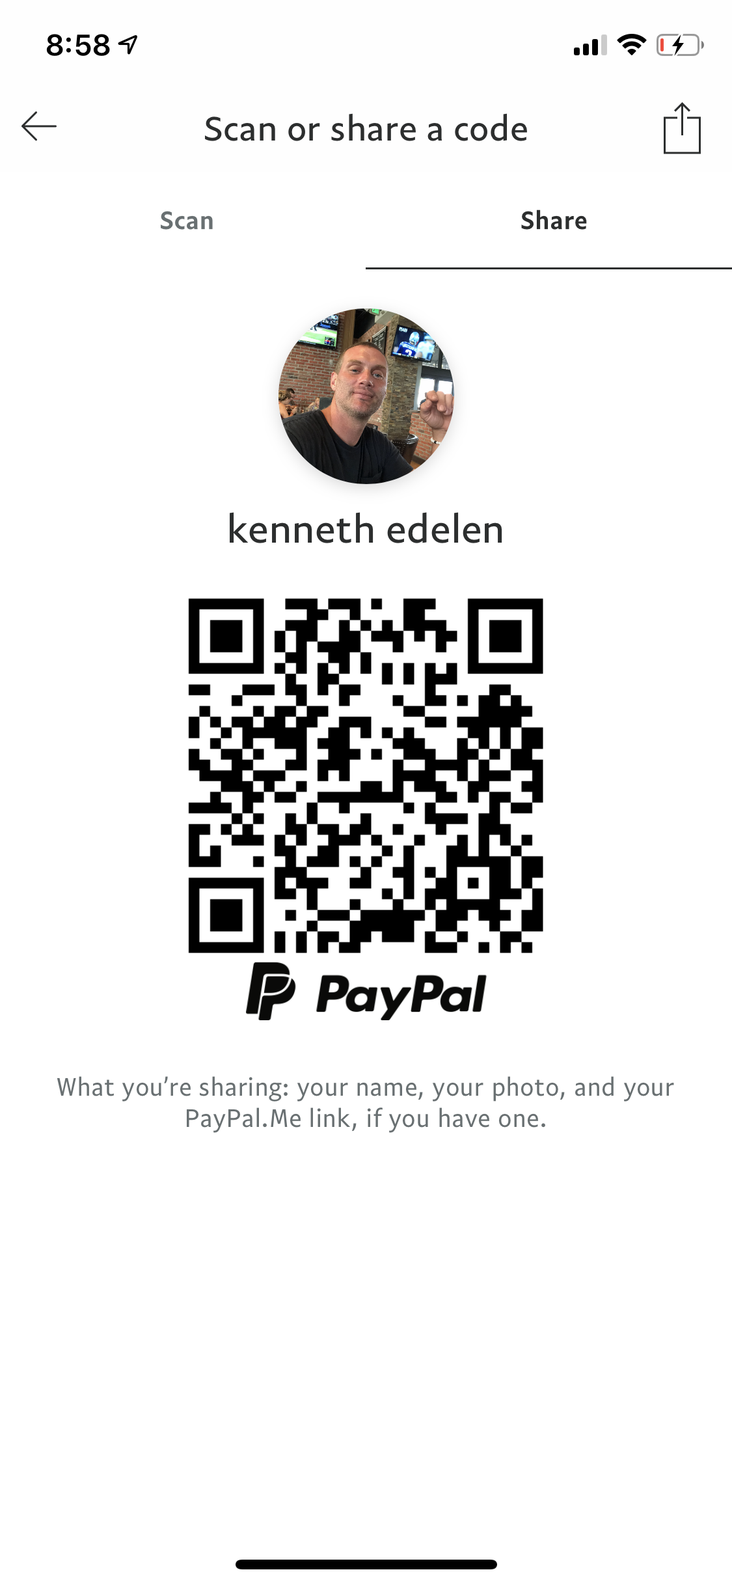 PayPal Me/Asgardia help me promote